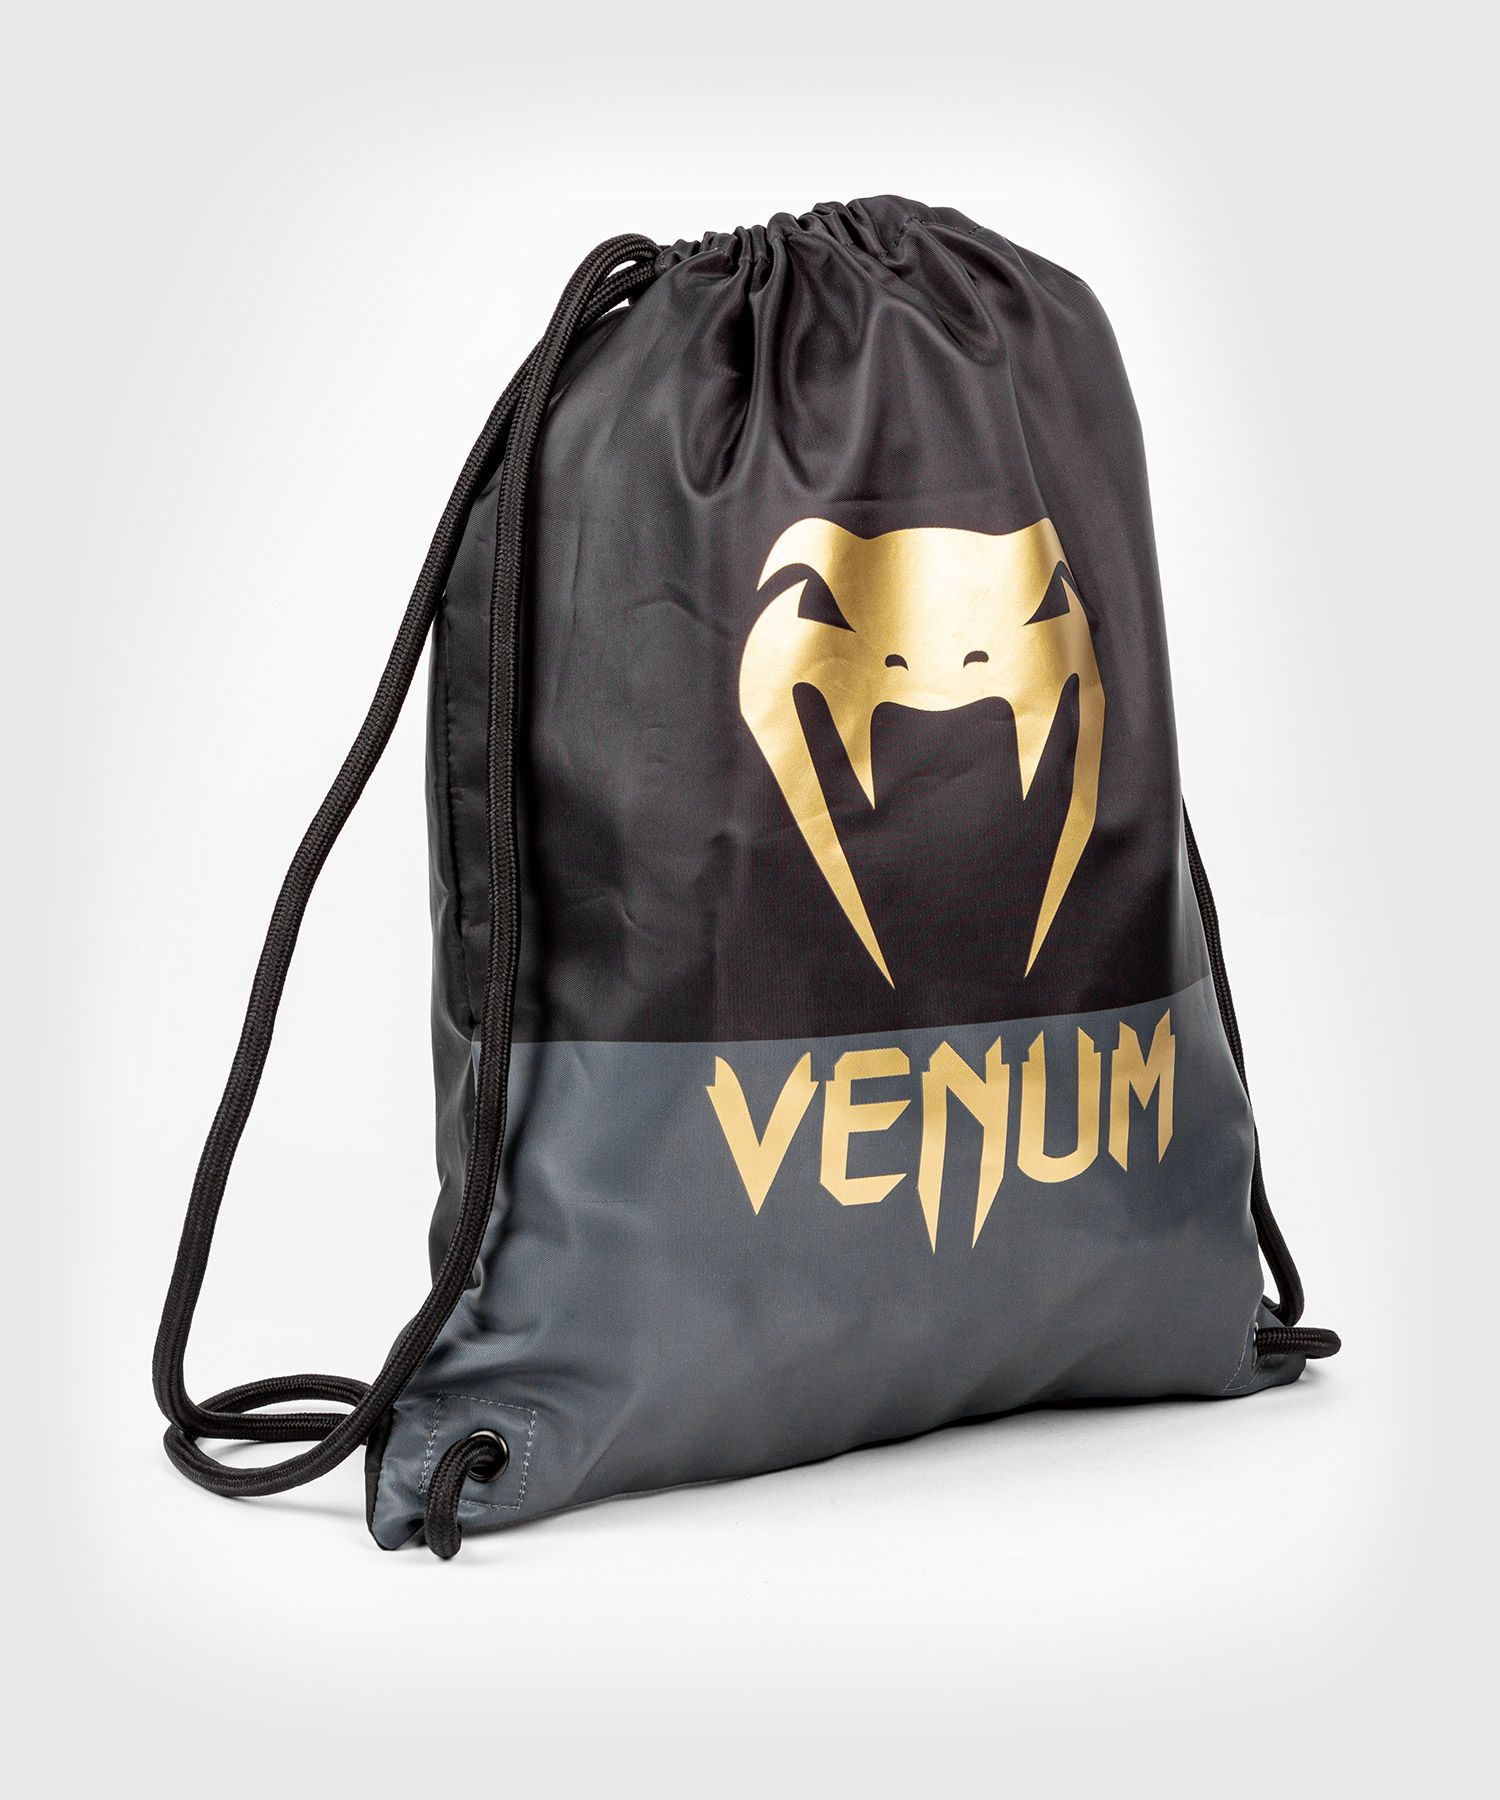 Bolsa de cordón Venum Classic  - Negro/Bronce